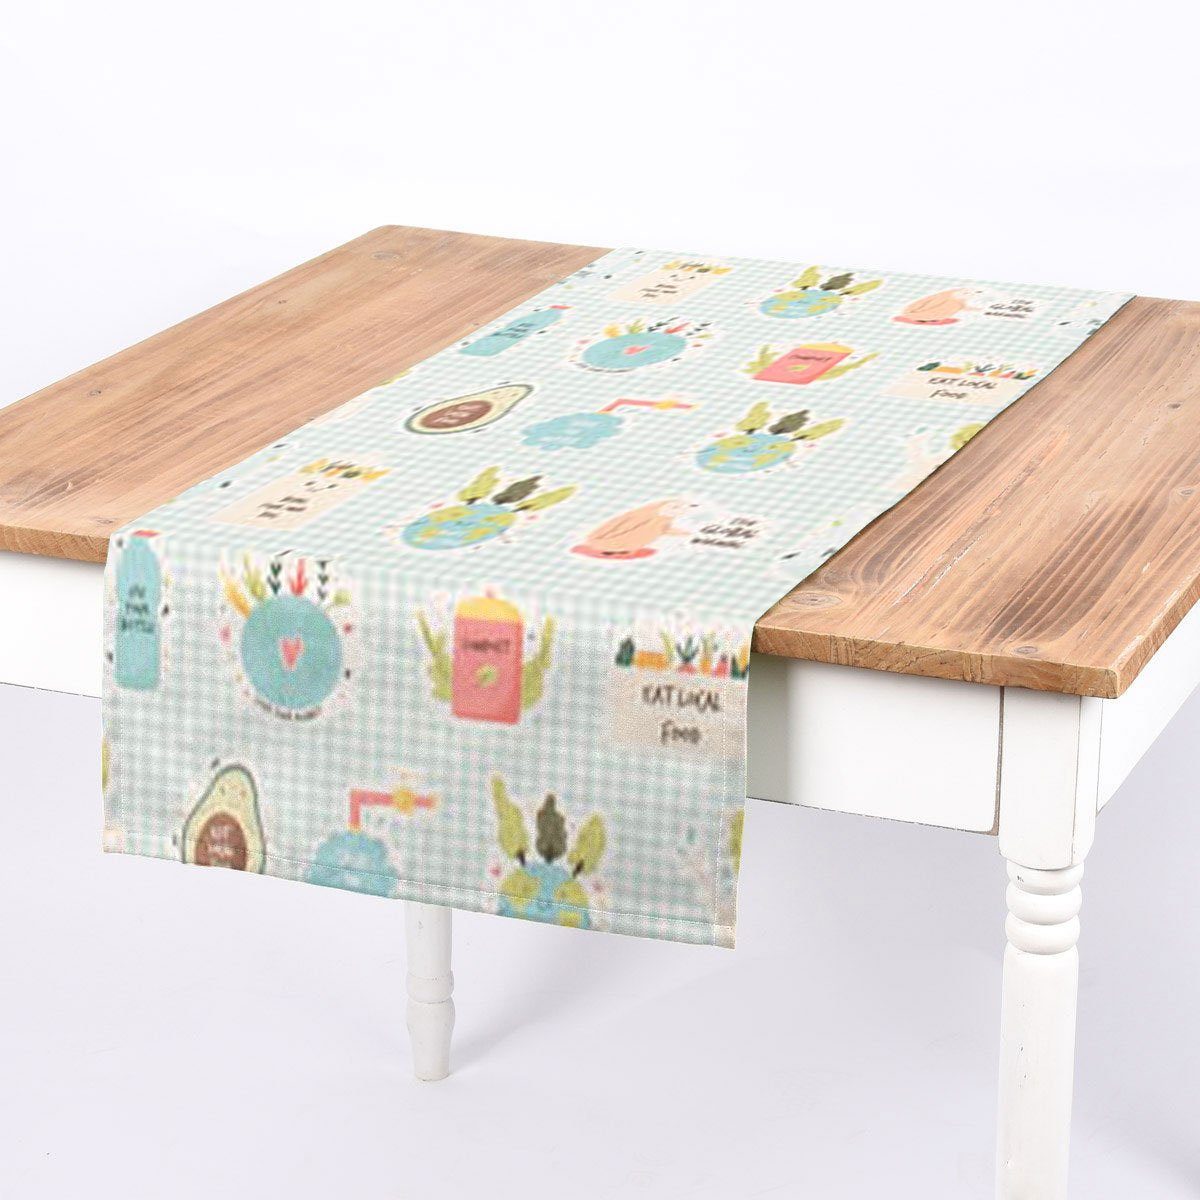 SCHÖNER LEBEN. Tischläufer SCHÖNER LEBEN. Tischläufer Eco Umweltschutz Nachhaltigkeit bunt, handmade | Tischläufer